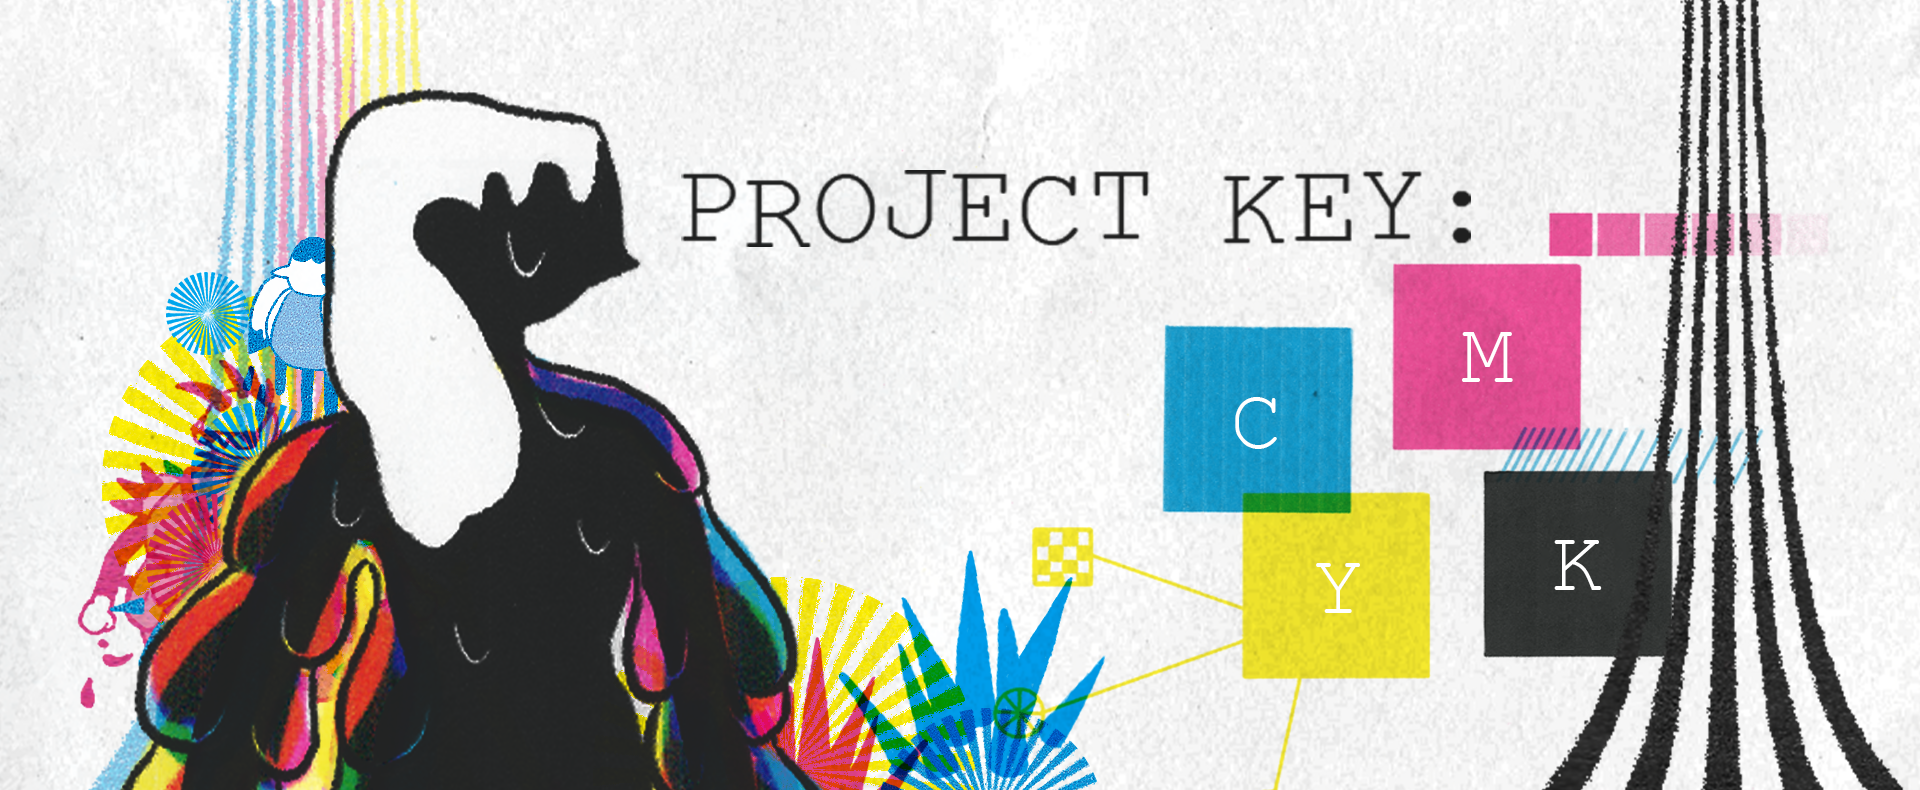 Project key: CMYK